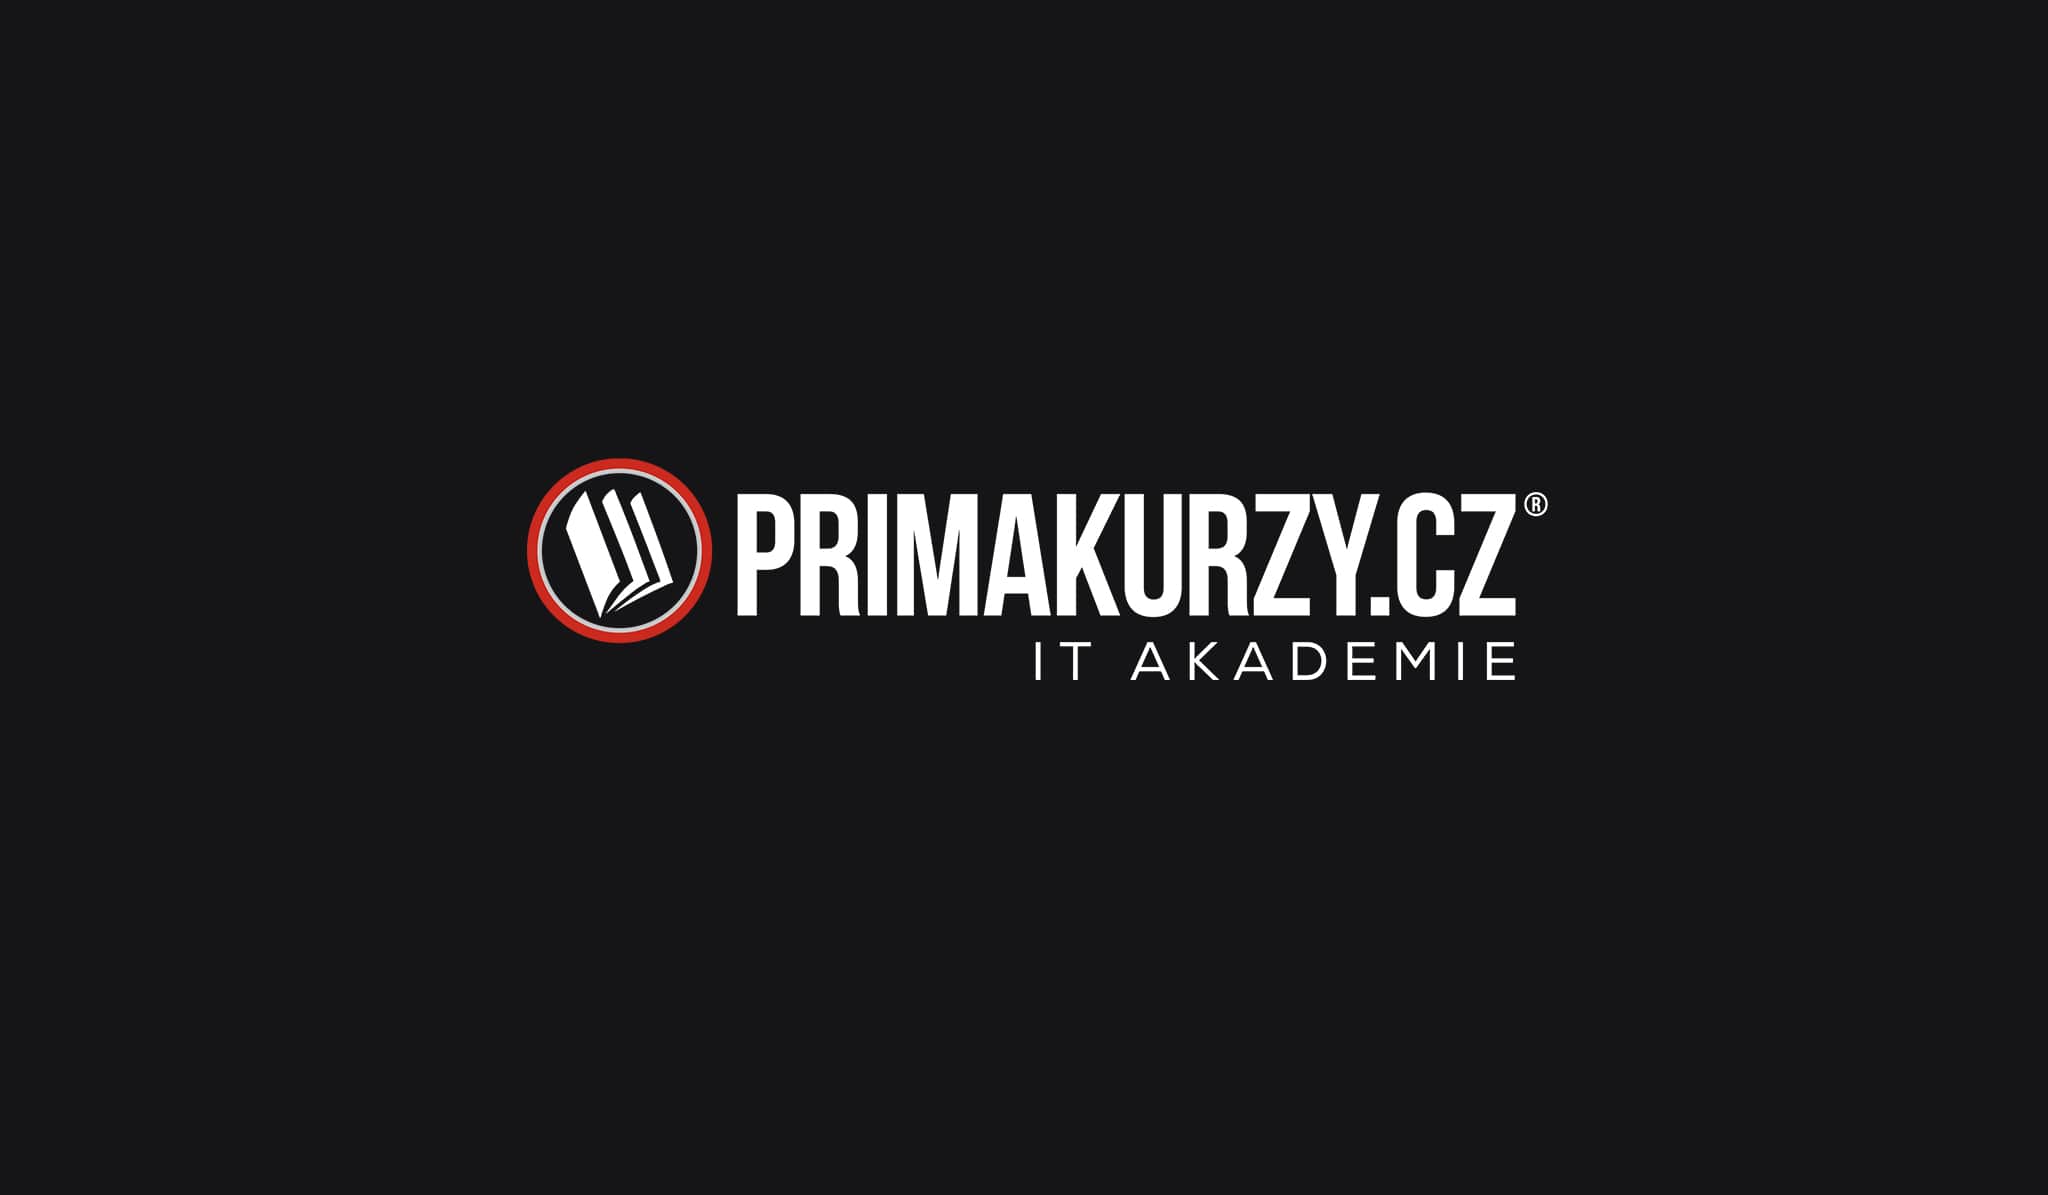 PrimaKurzy.cz